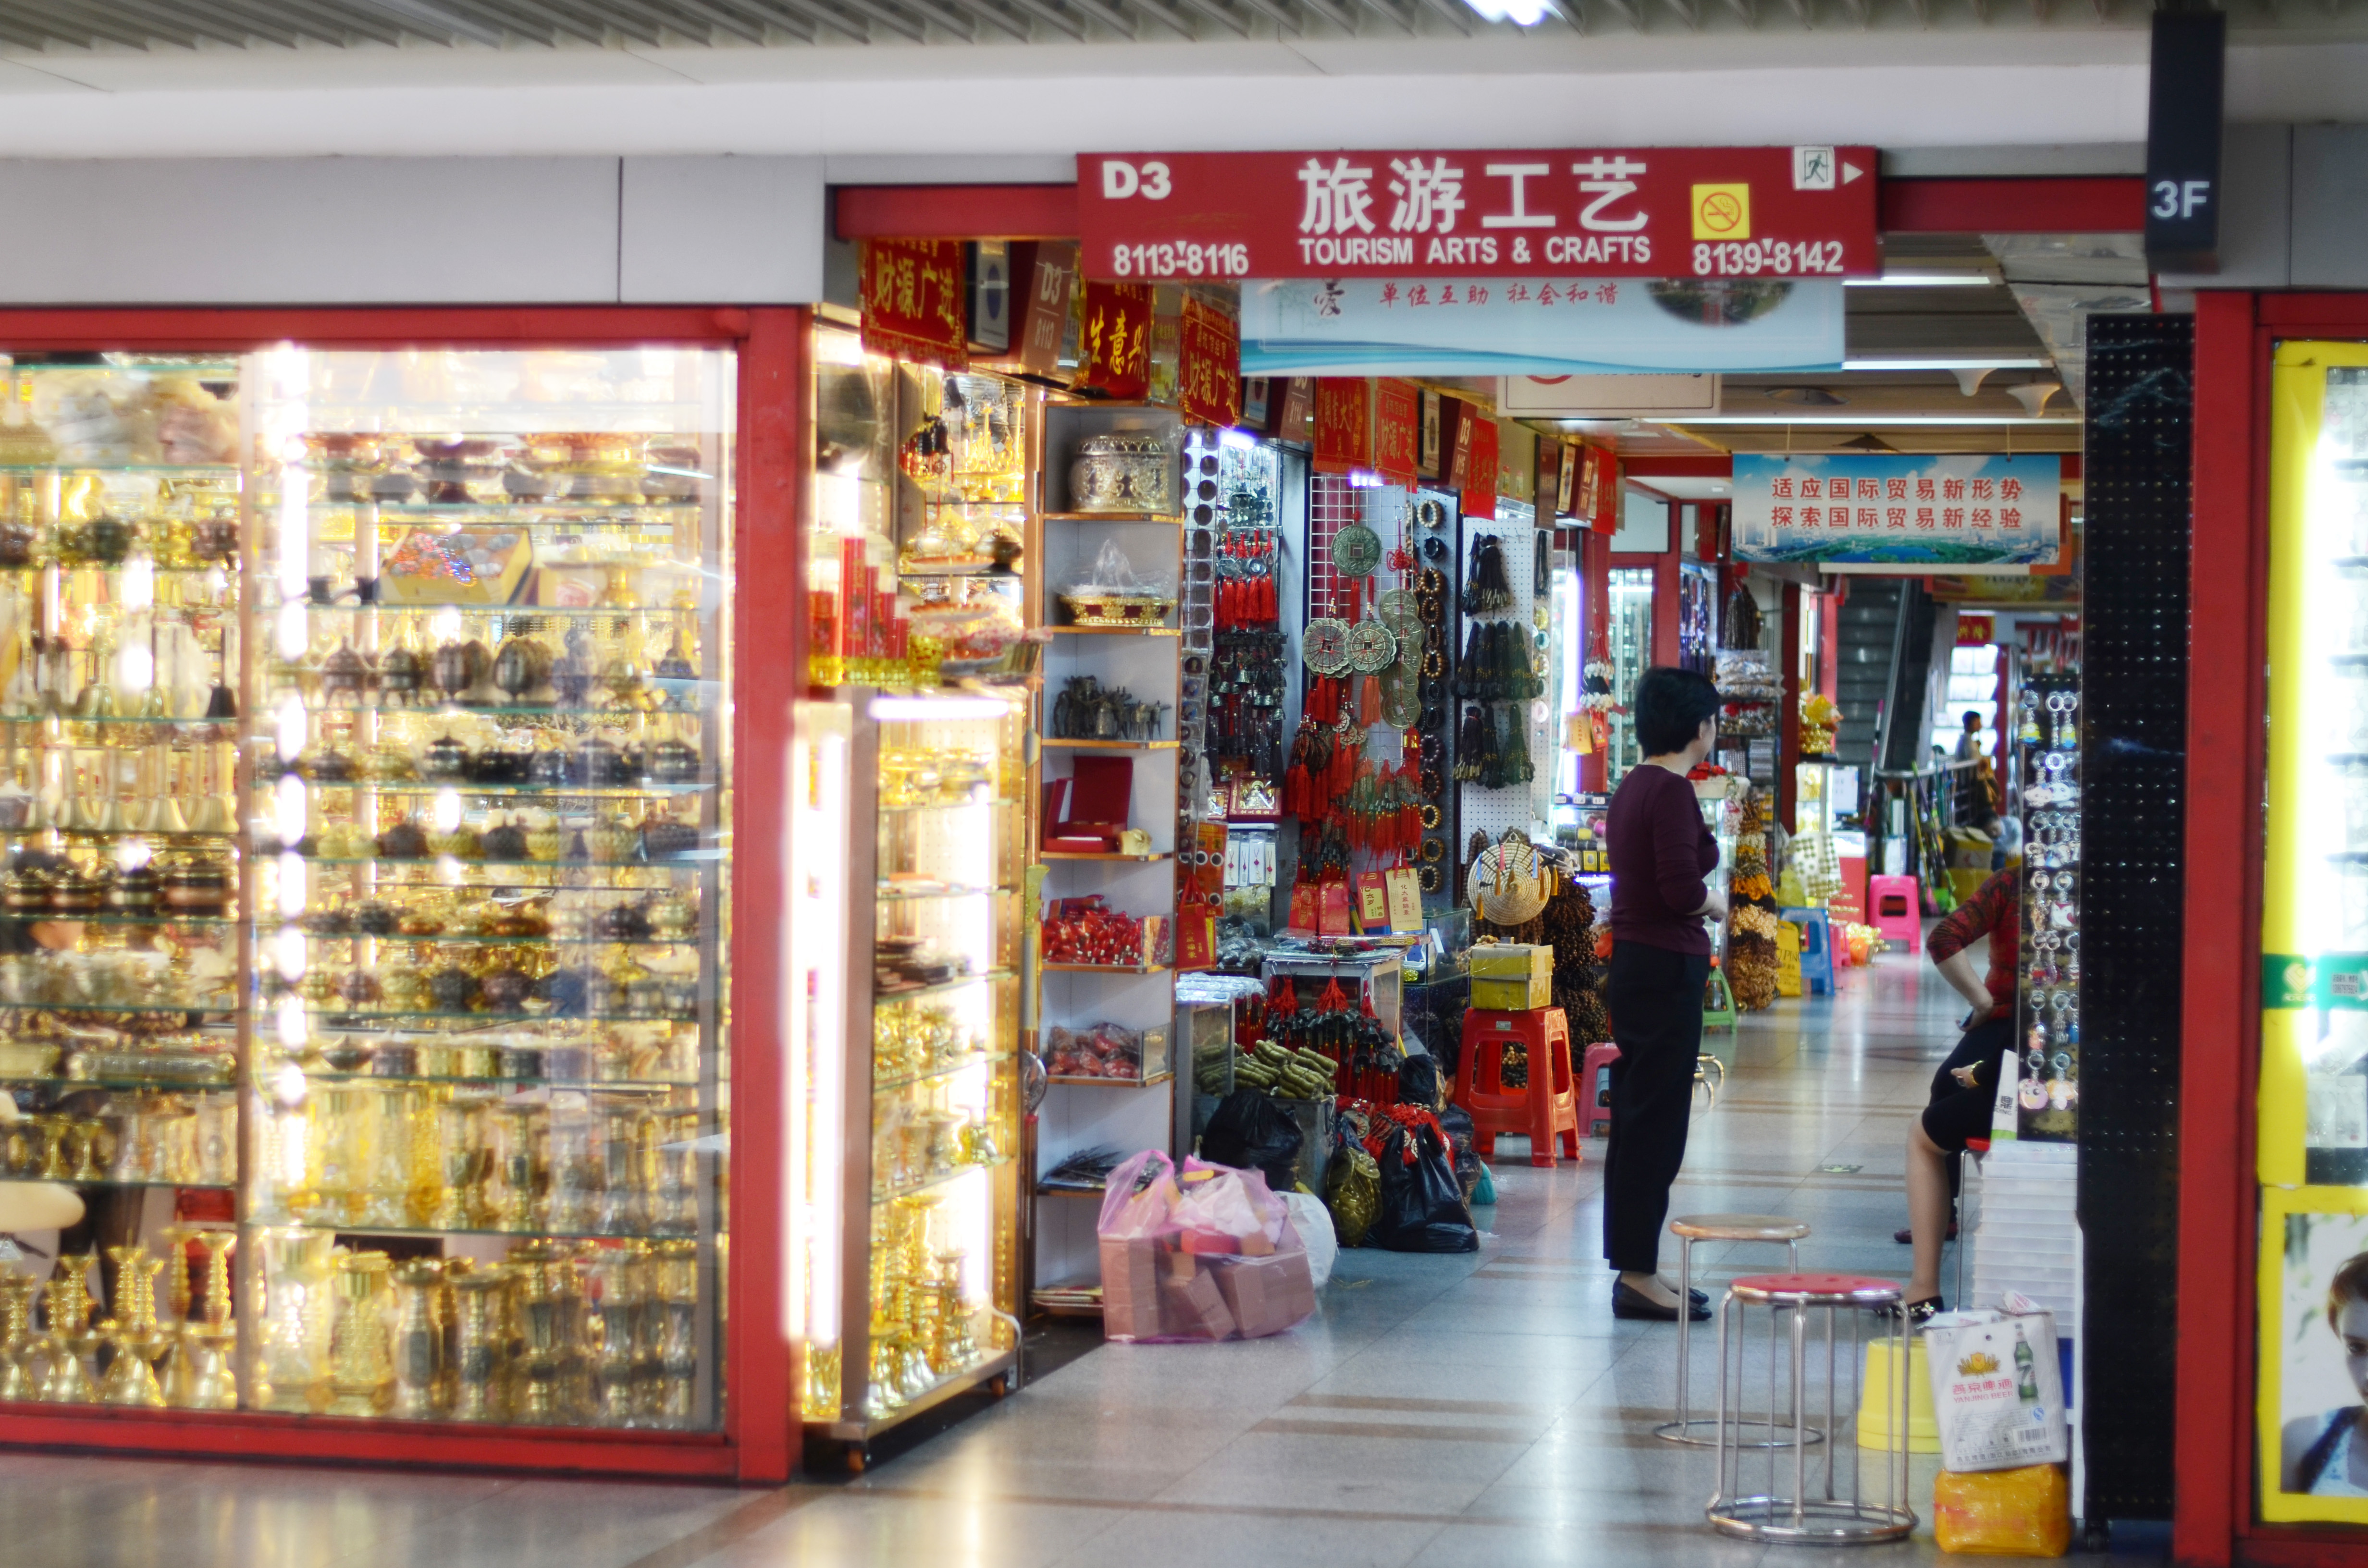 Crafts area of Yiwu market